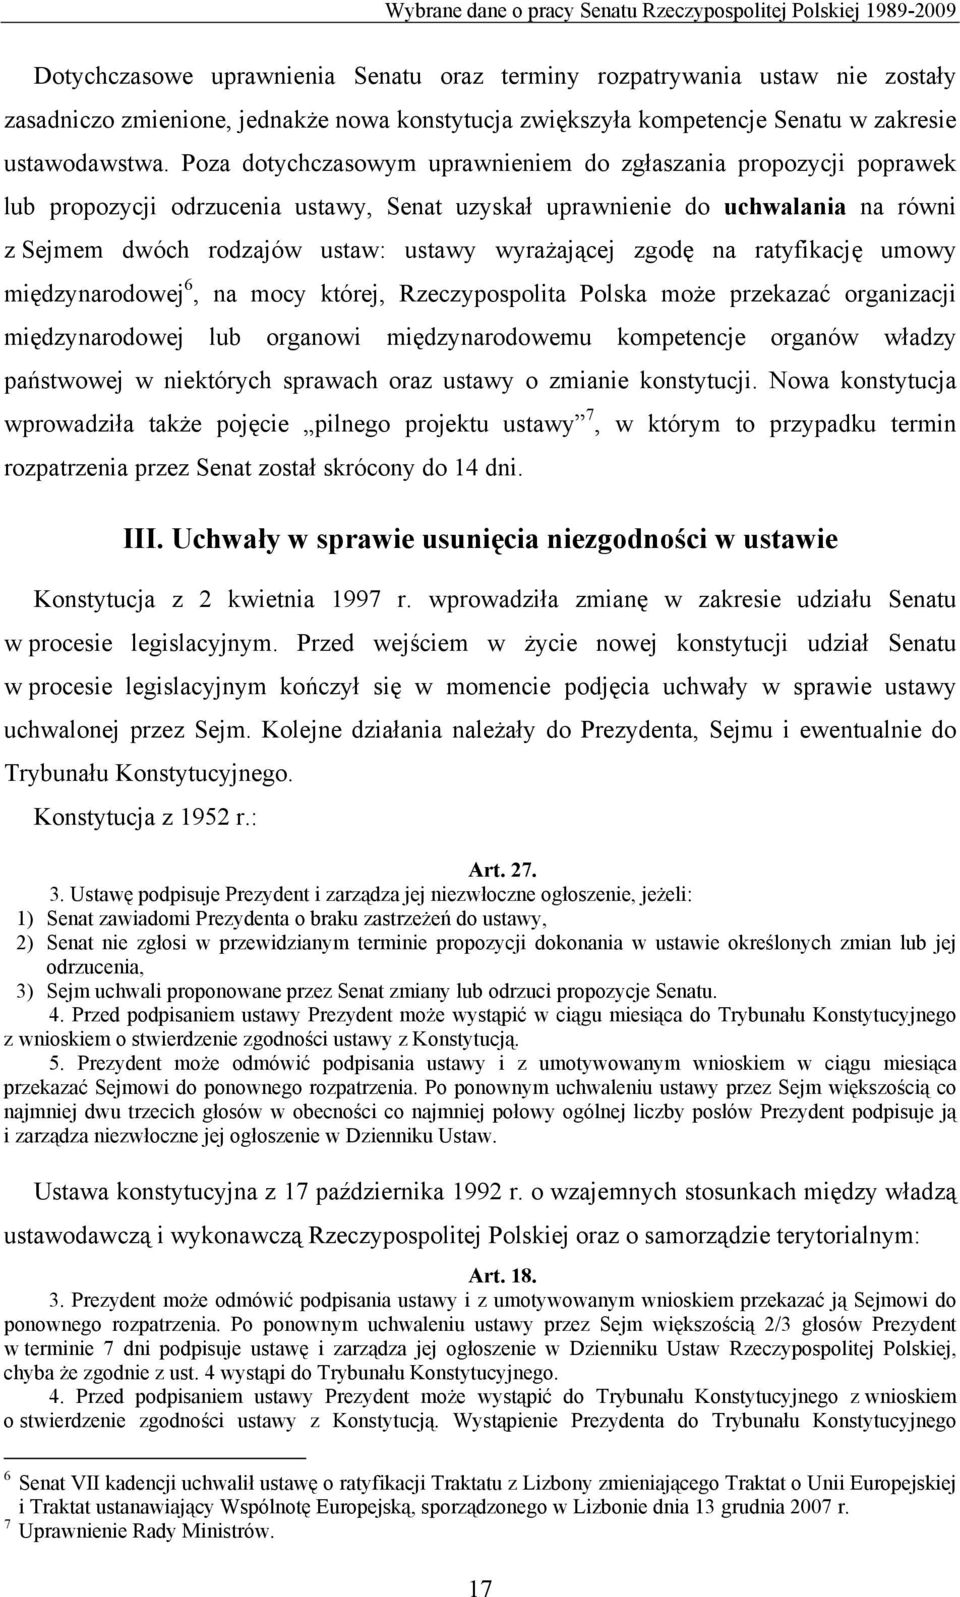 Poza dotychczasowym uprawnieniem do zgłaszania propozycji poprawek lub propozycji odrzucenia ustawy, Senat uzyskał uprawnienie do uchwalania na równi z Sejmem dwóch rodzajów ustaw: ustawy wyrażającej